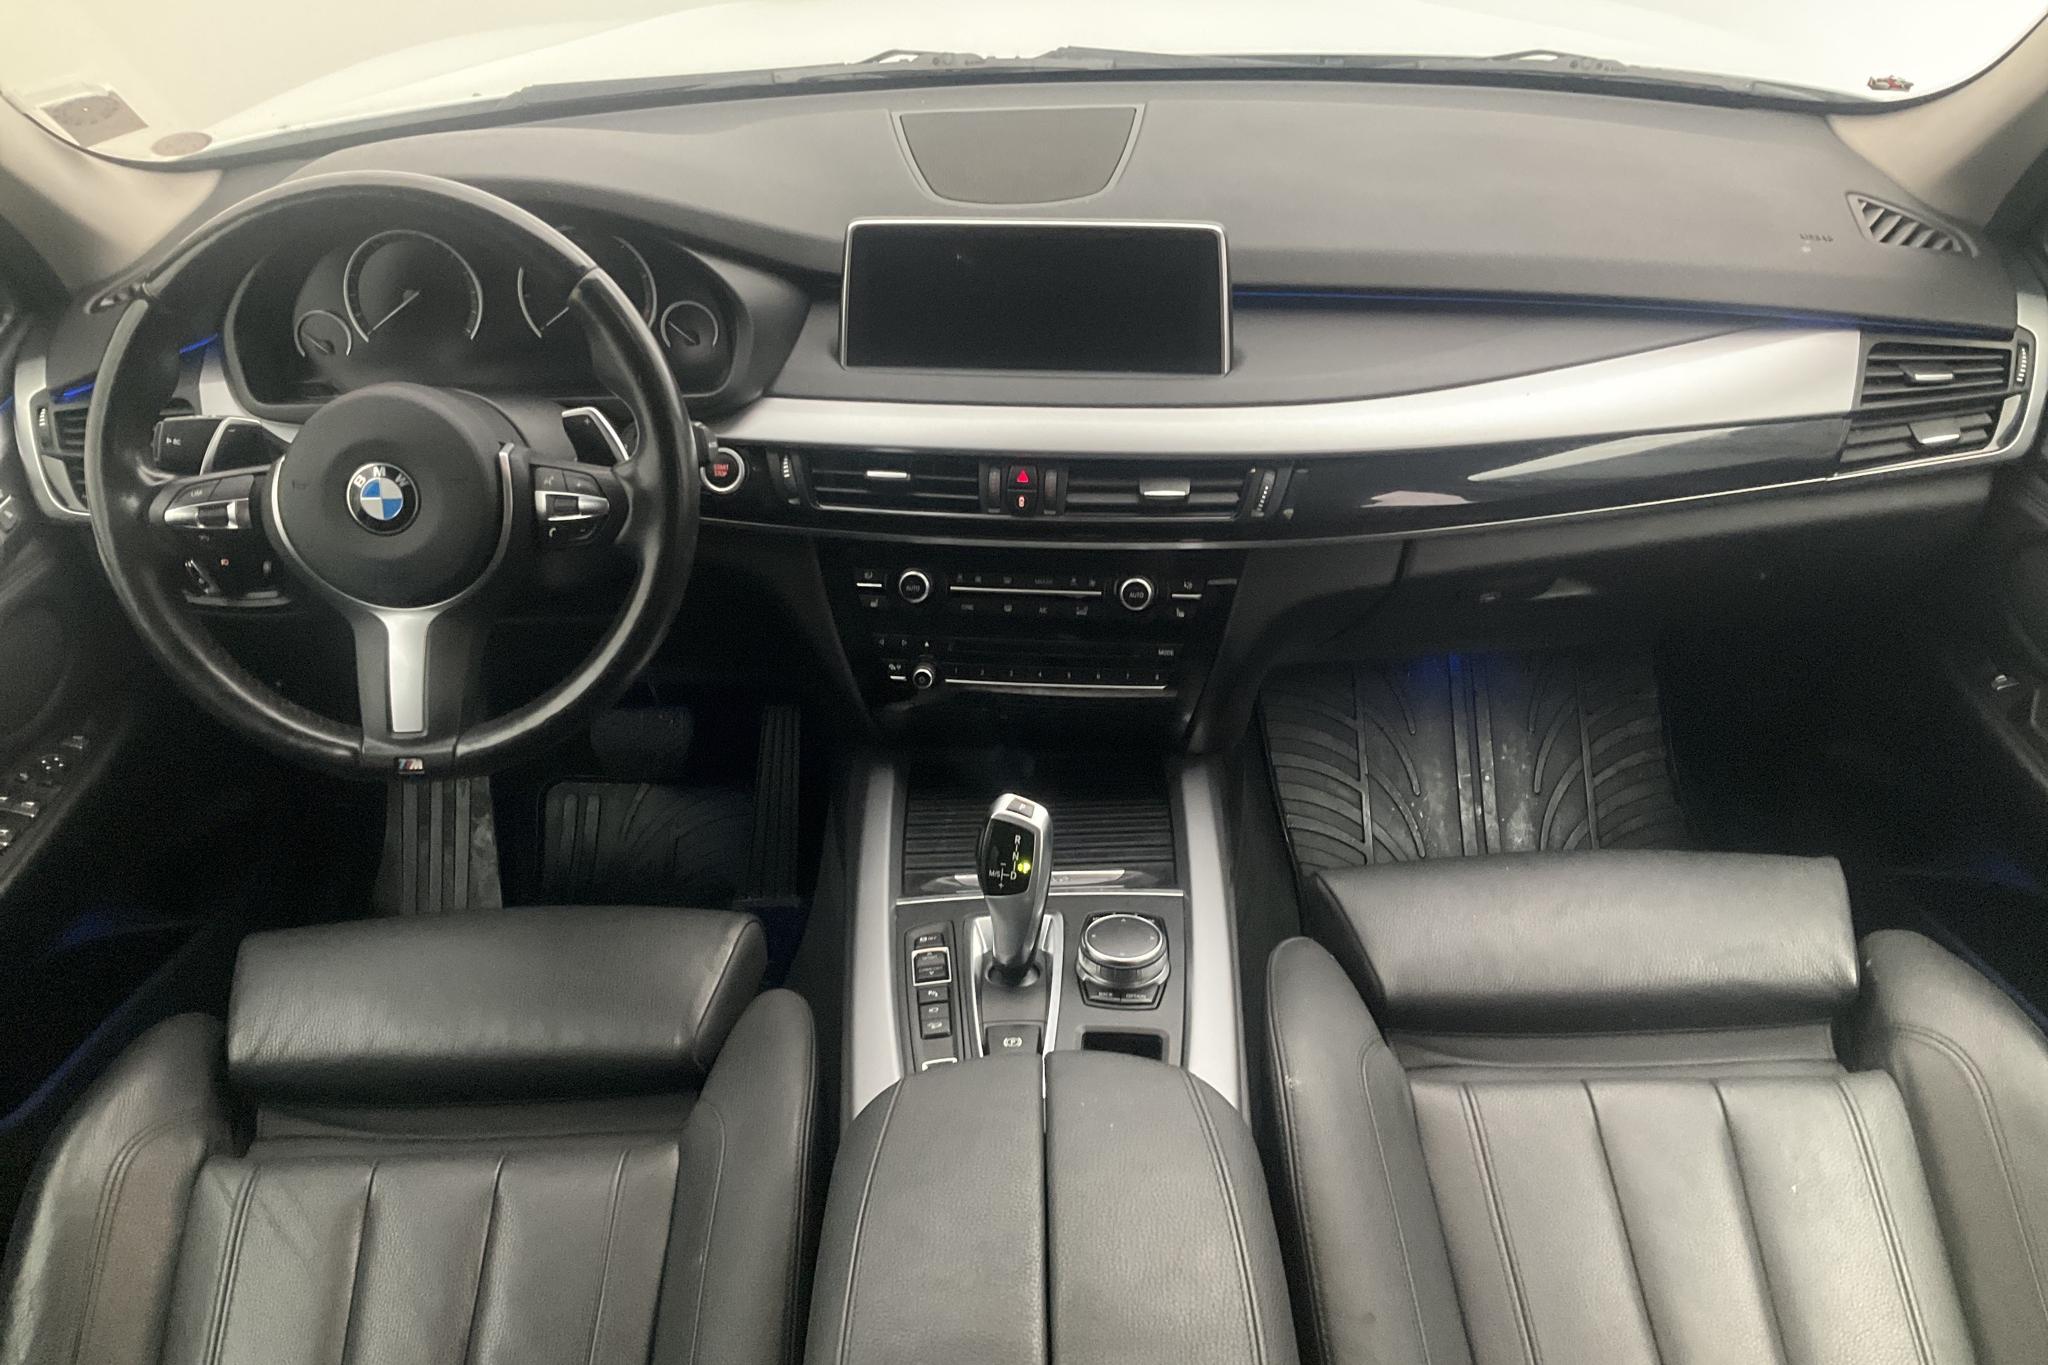 BMW X5 xDrive40e, F15 (313hk) - 104 840 km - Automatic - white - 2017